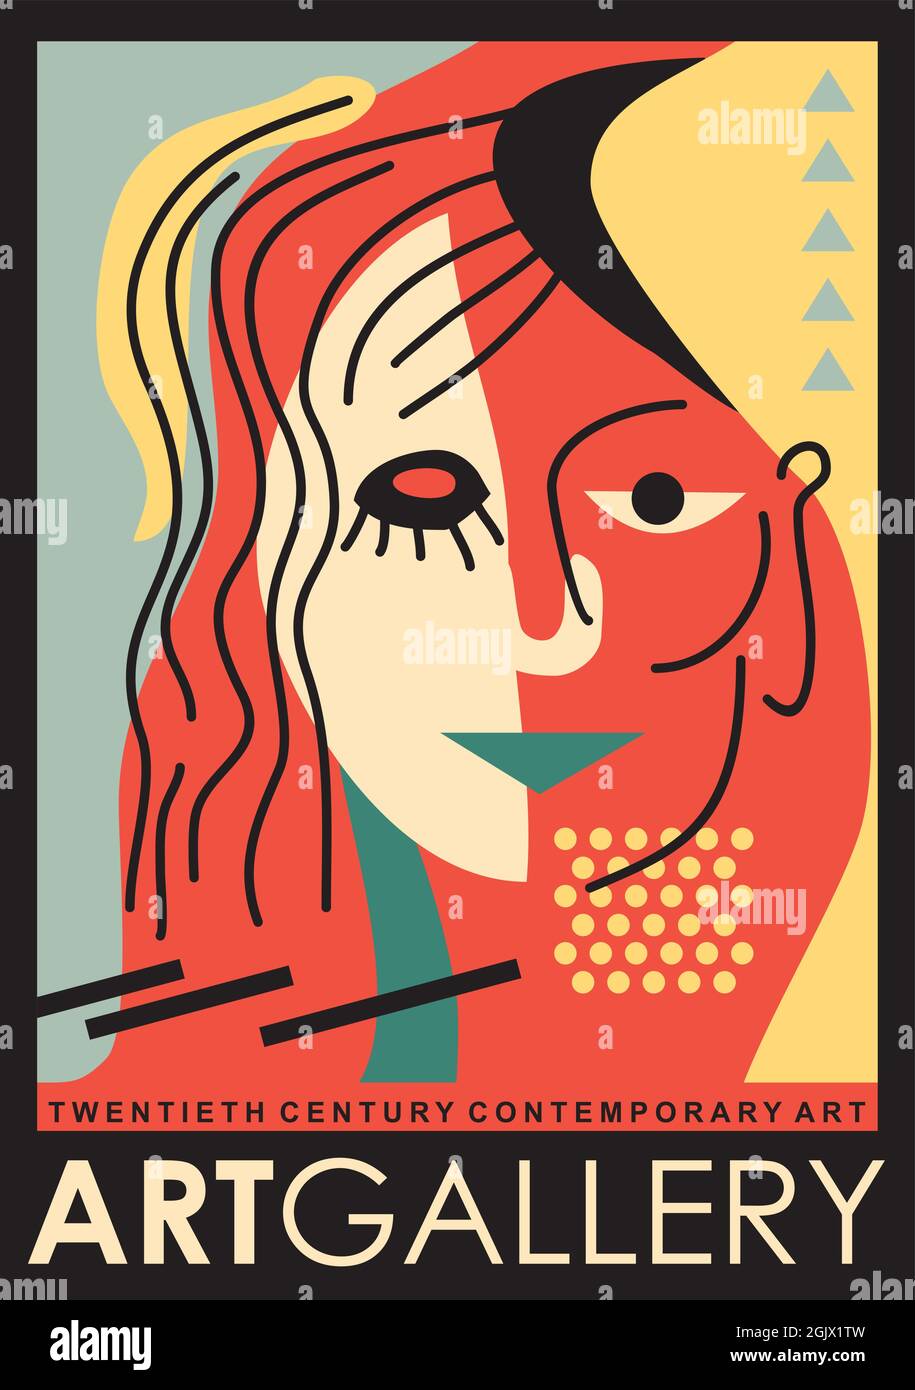 Design poster galleria d'arte con ritratto donna astratto. Volantino artistico per la mostra d'arte moderna contemporanea. Grafica vettoriale vintage Illustrazione Vettoriale